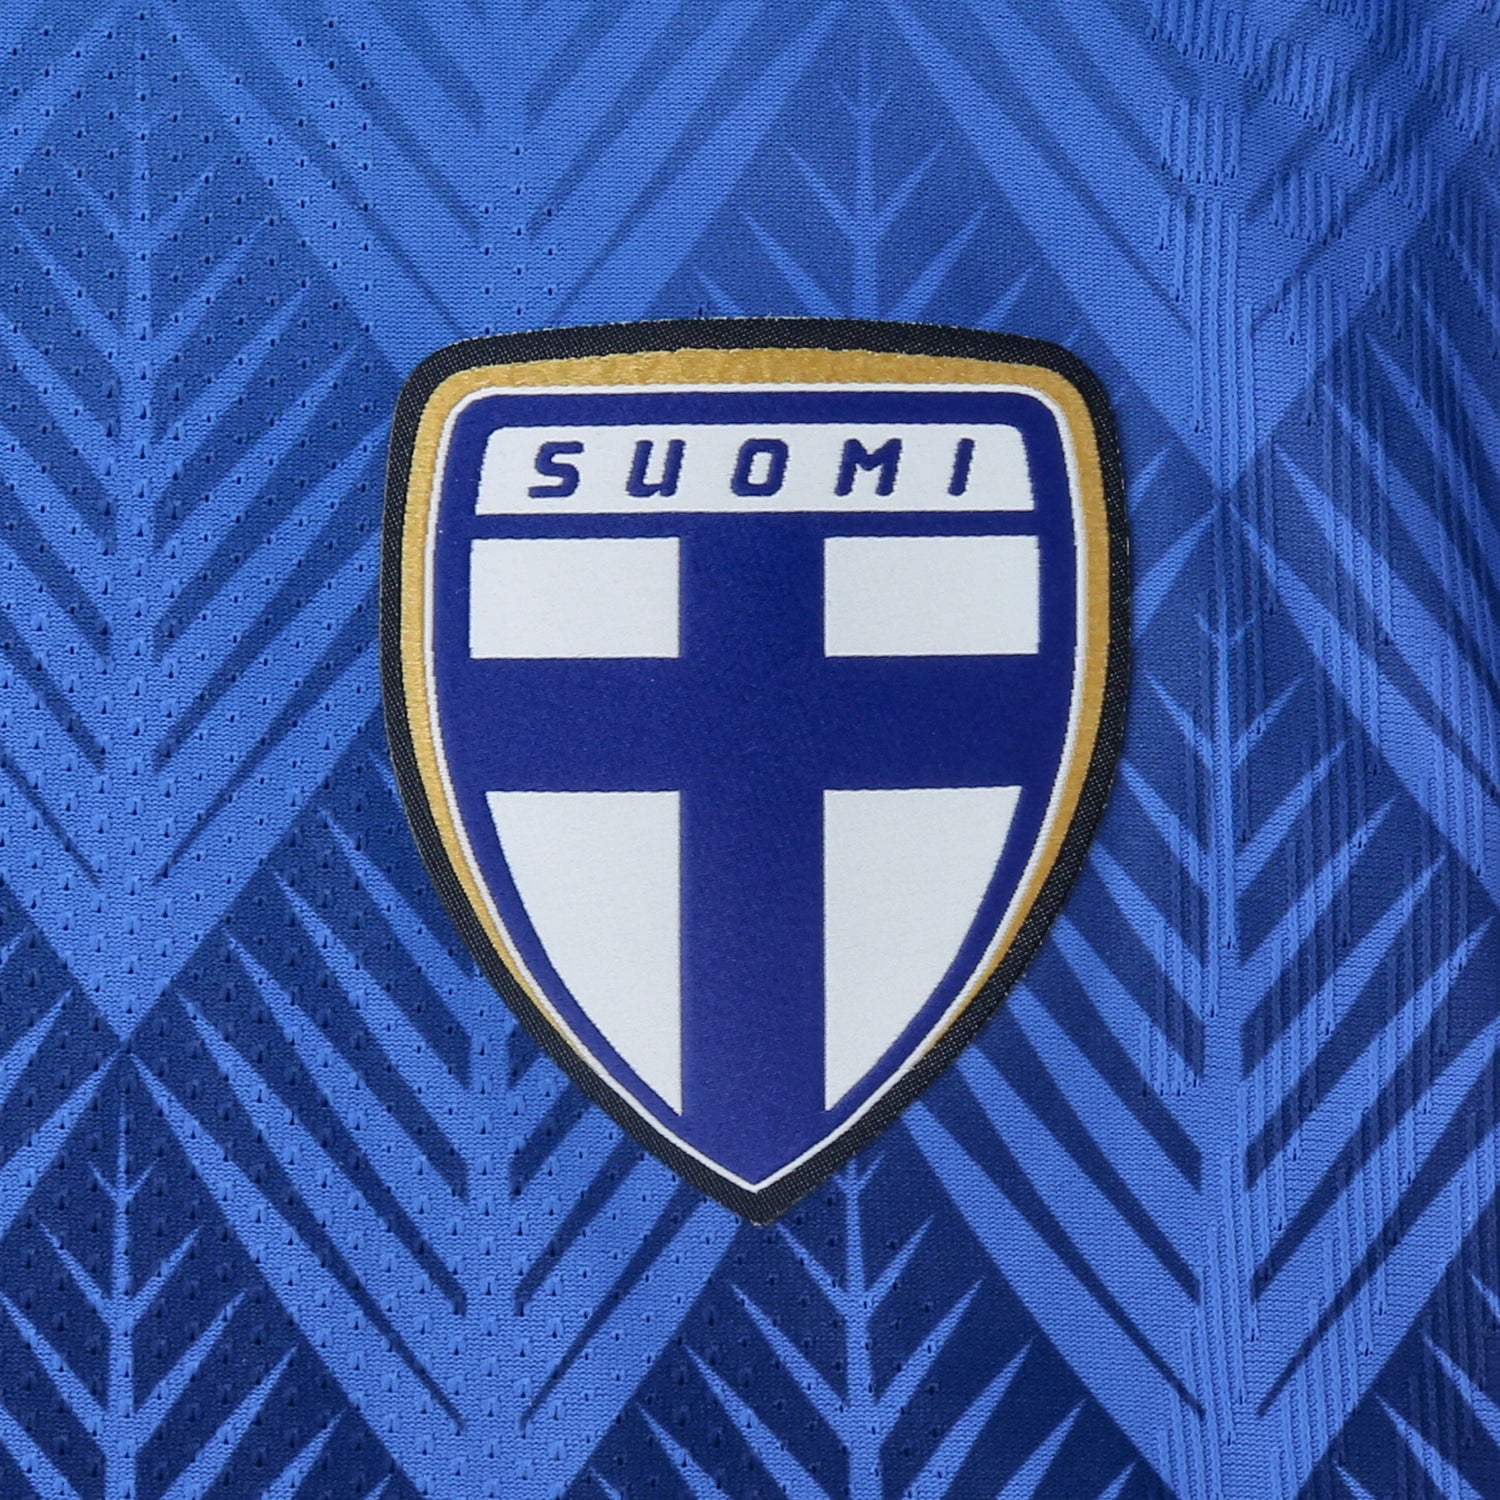 Finland Official Away Jersey 2022/23, Lappalainen Print